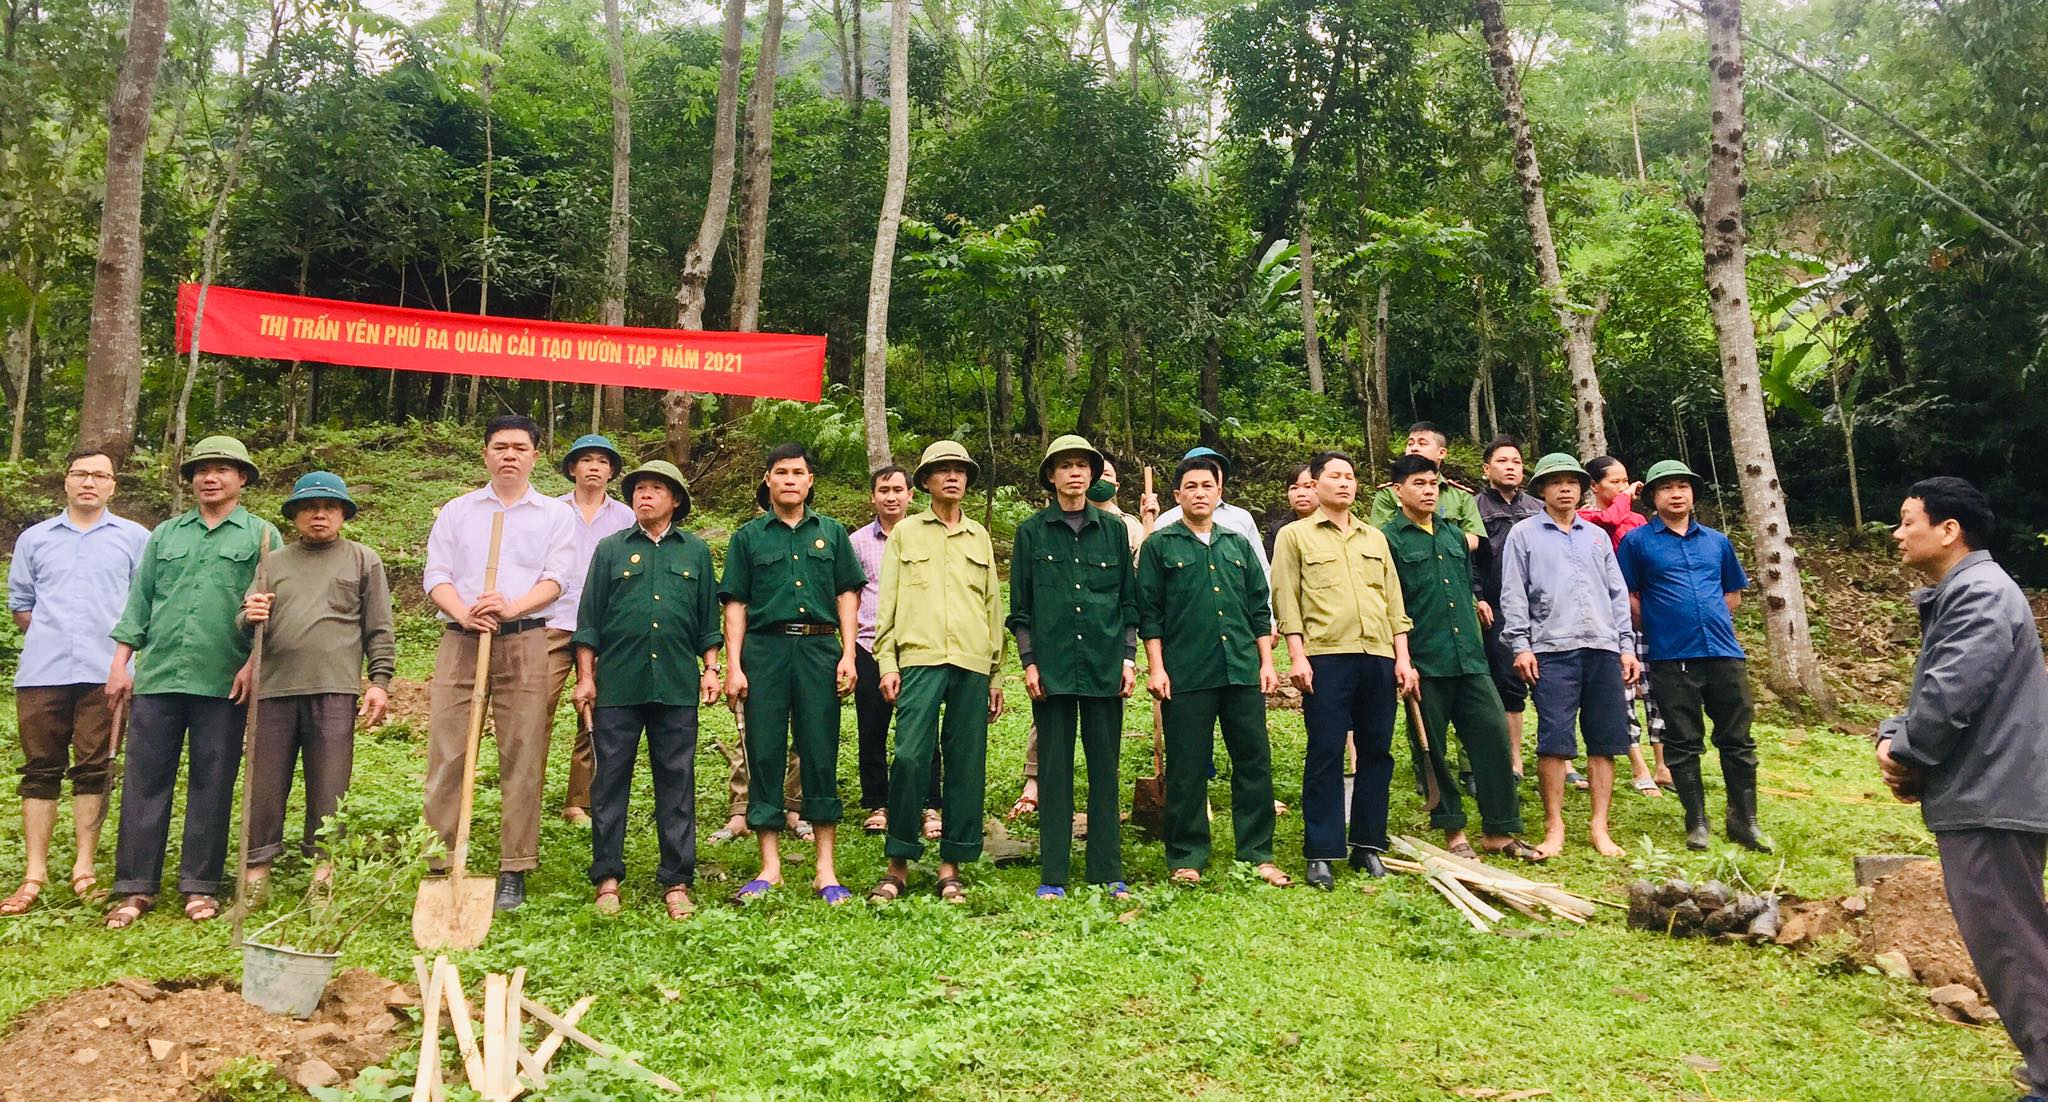 Thị trấn Yên Phú tiếp tục thực hiện chương trình cải tạo vườn tạp